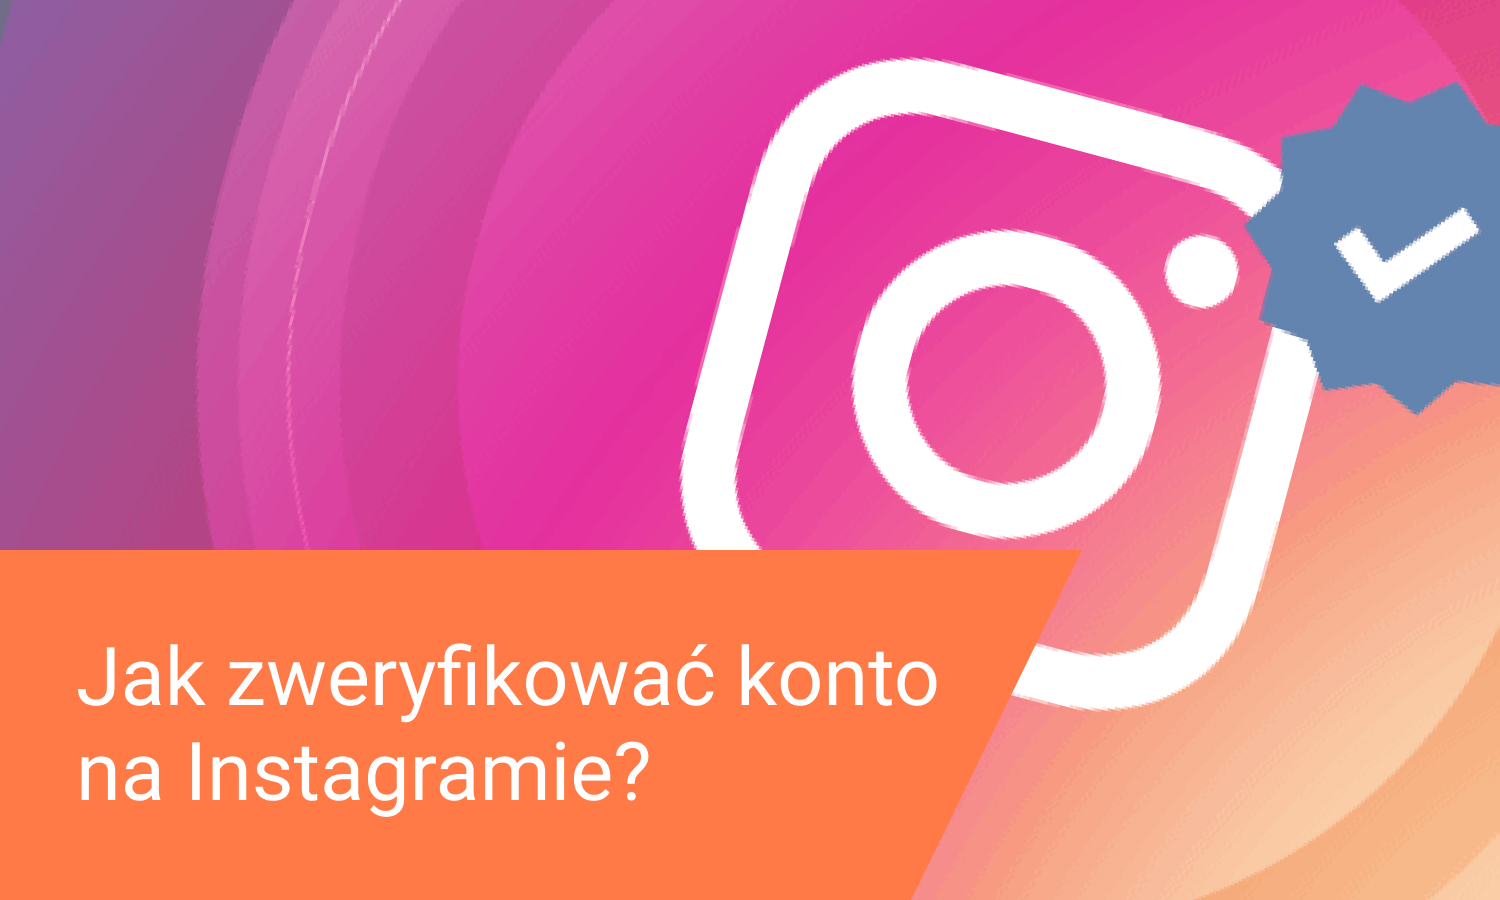 Jak zweryfikować konto na Instagramie w 2022?